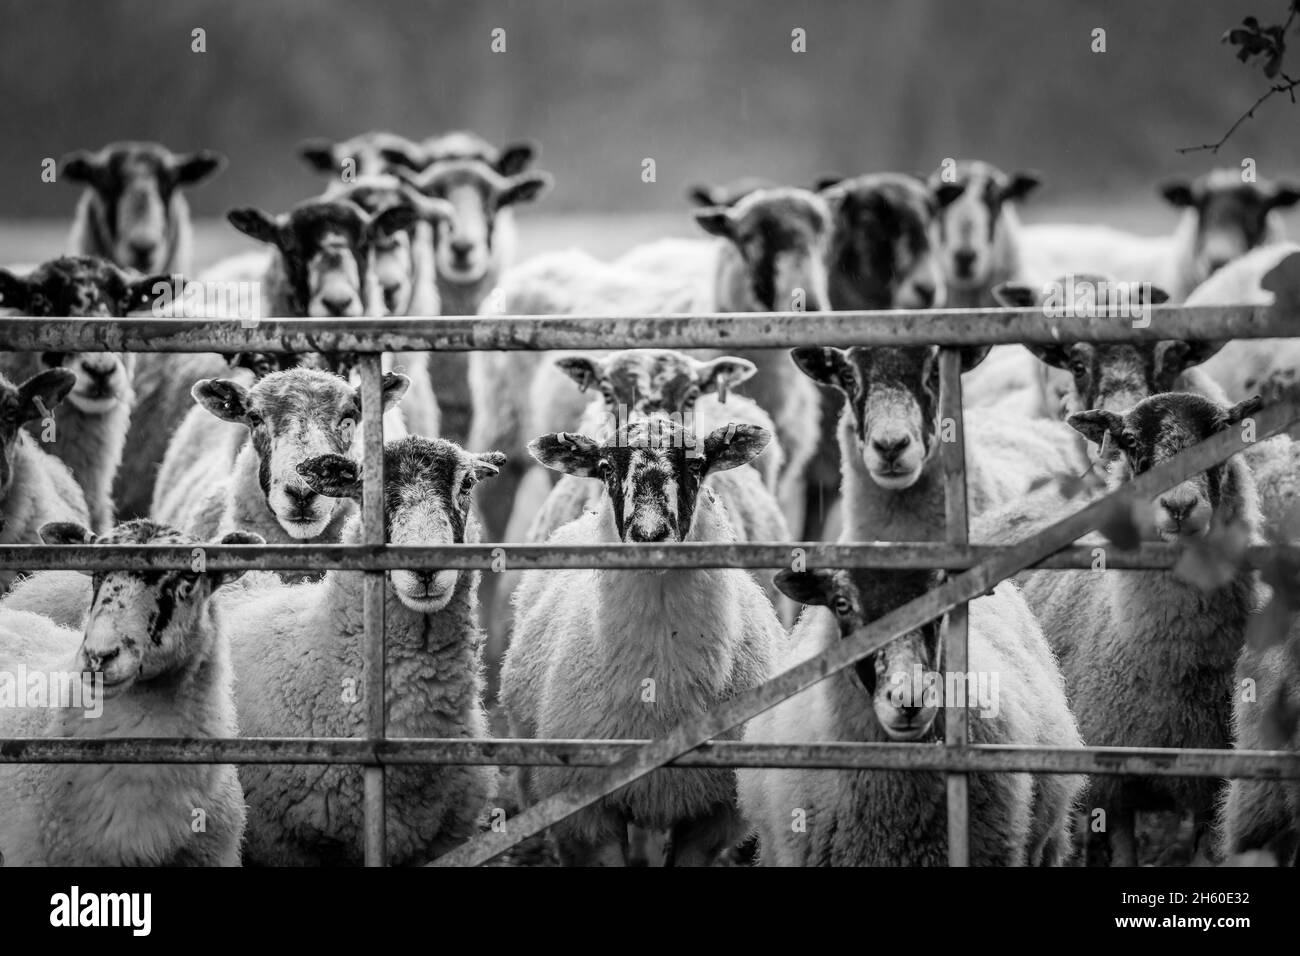 Gros plan d'un troupeau de moutons du Royaume-Uni attendant à l'extérieur, regardant à travers une porte de ferme, regardant directement la caméra.Animaux amusants. Banque D'Images